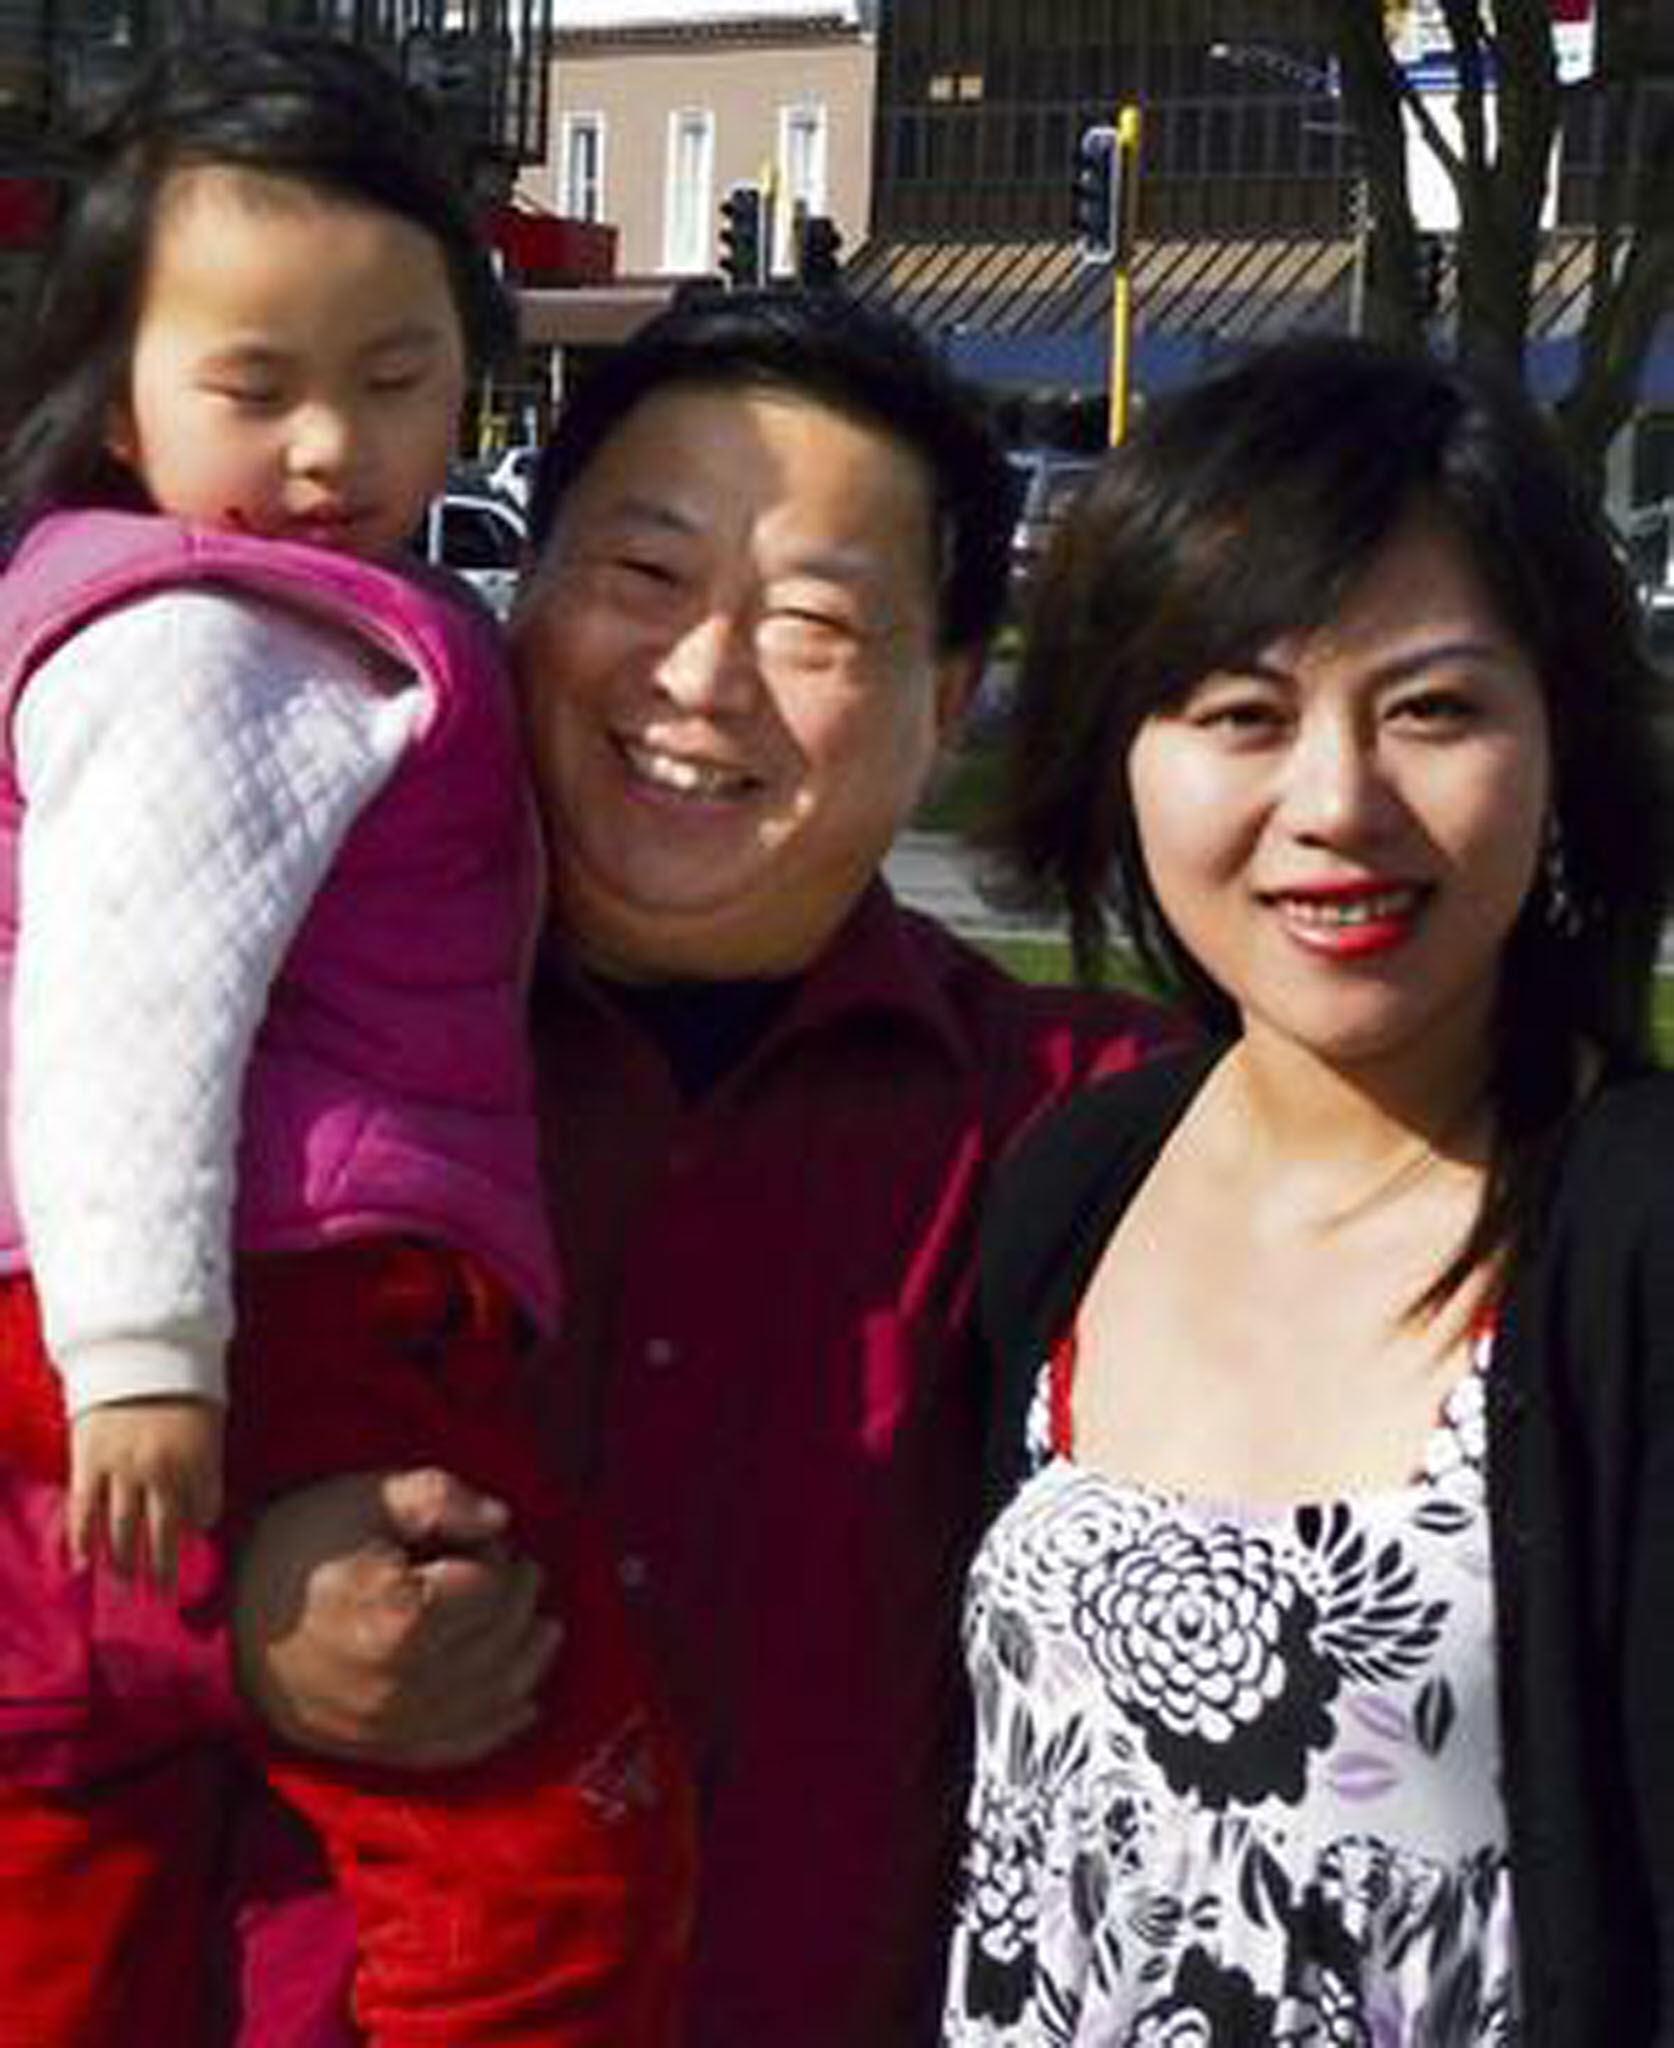 Misshandlade familjen Lilla Qian, pappa Nai Yin Xue och mamma Annie Xue Liu. På bilden ser de lyckliga ut men nu framkommer nya uppgifter om att det förekom misshandel i familjen.